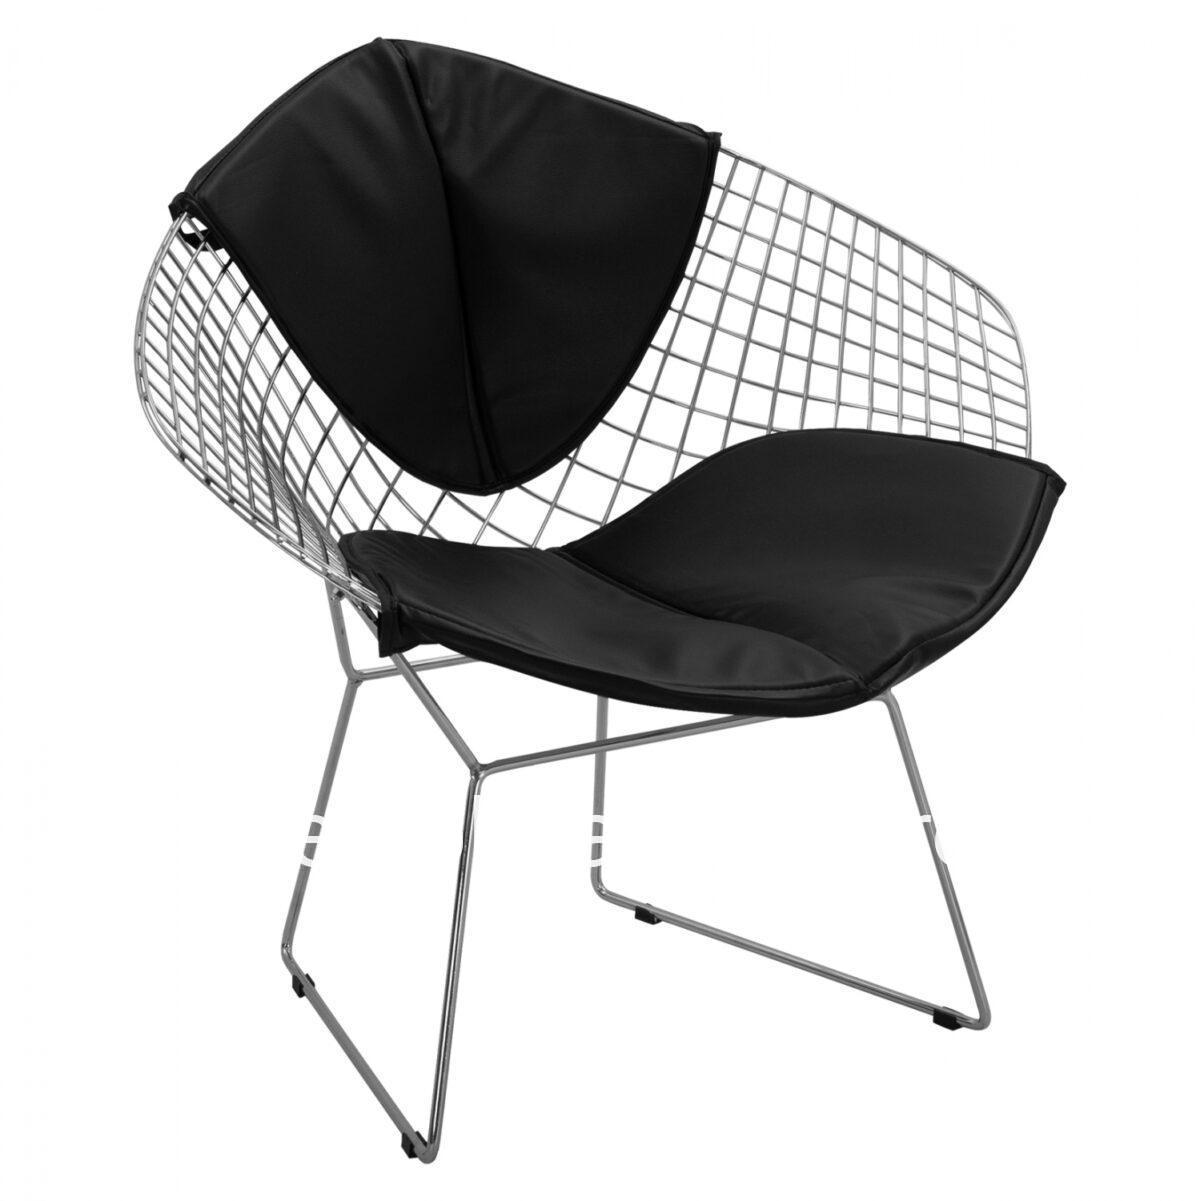 Chair-Armchair Cloe HM8045.100 chromed with black PU 81x67x79 cm